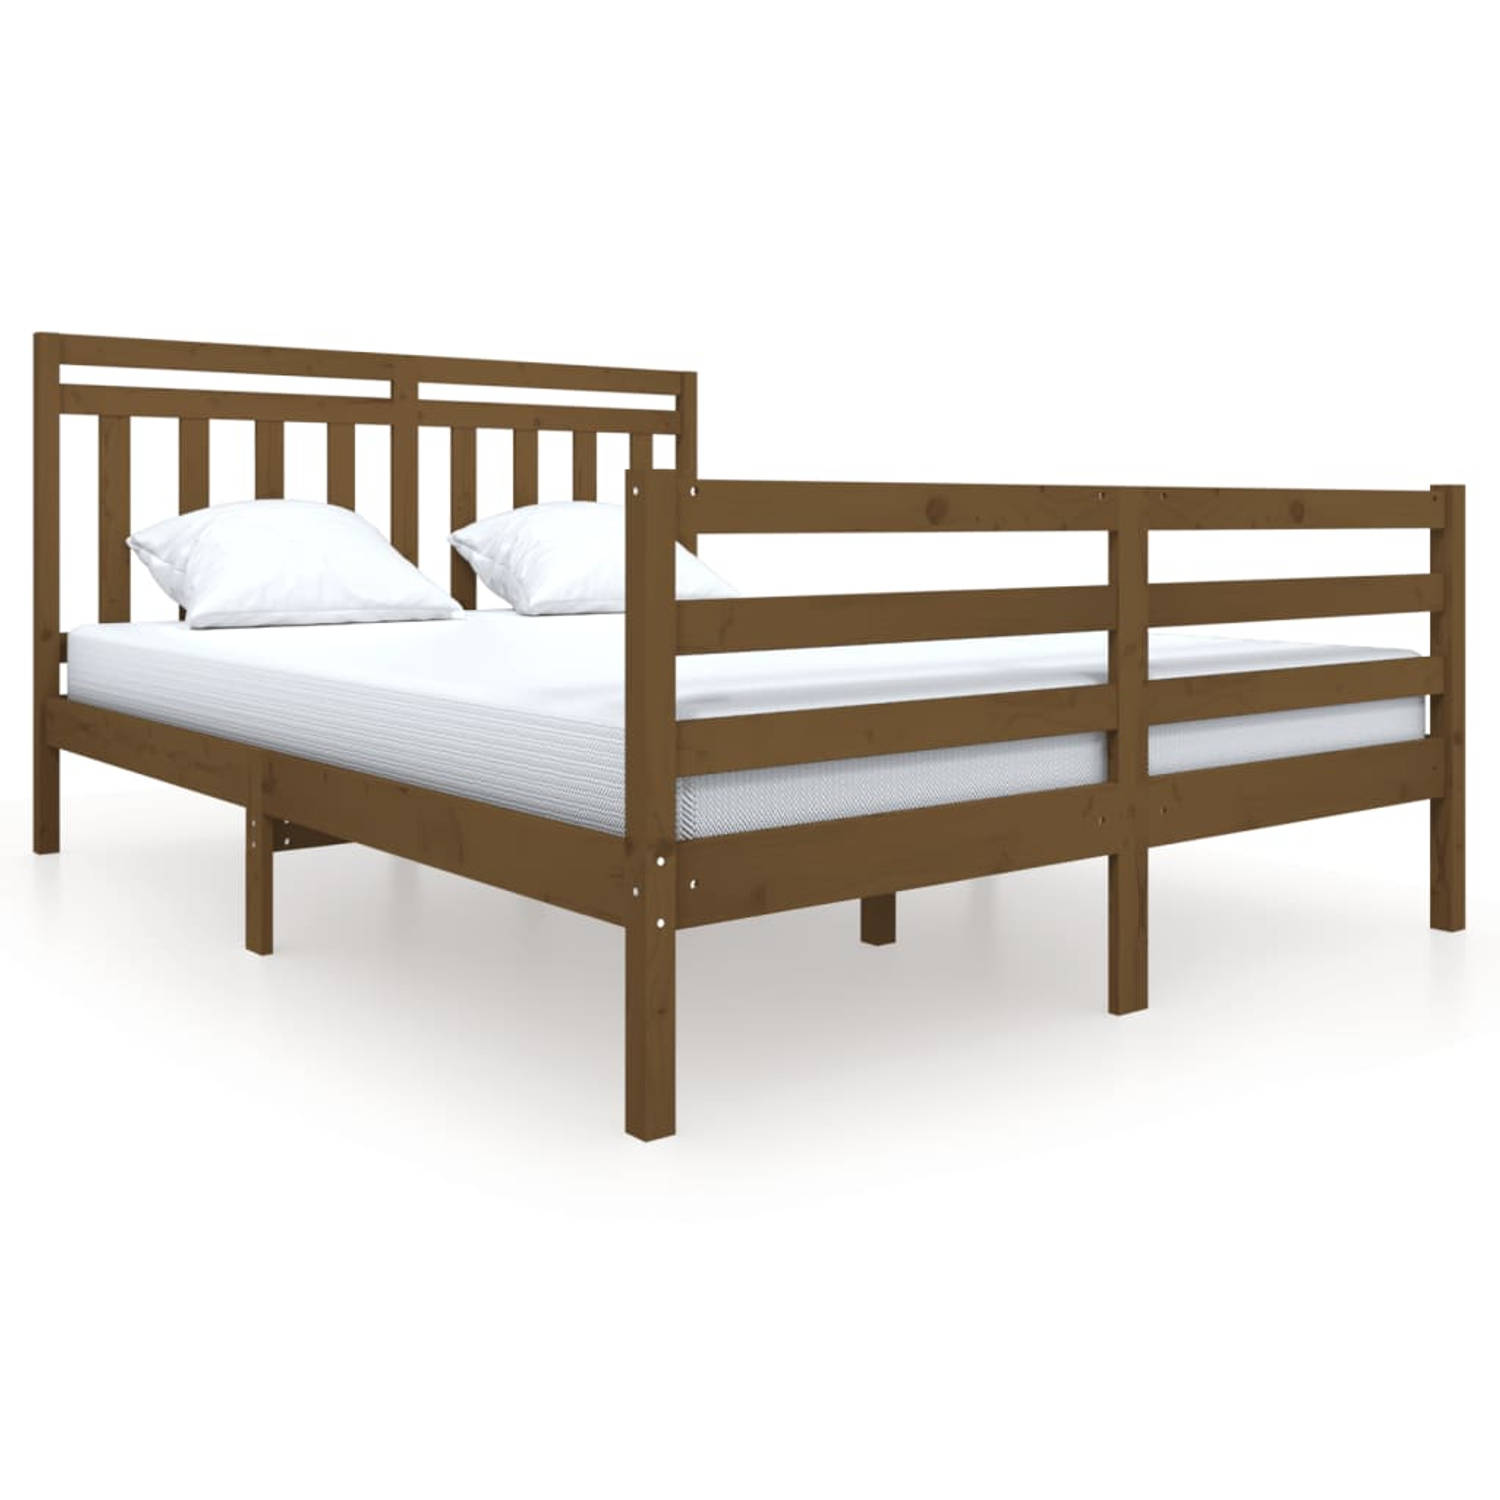 The Living Store Bedframe massief hout honingbruin 160x200 cm - Bedframe - Bedframes - Tweepersoonsbed - Bed - Bedombouw - Dubbel Bed - Frame - Bed Frame - Ledikant - Bedframe Met